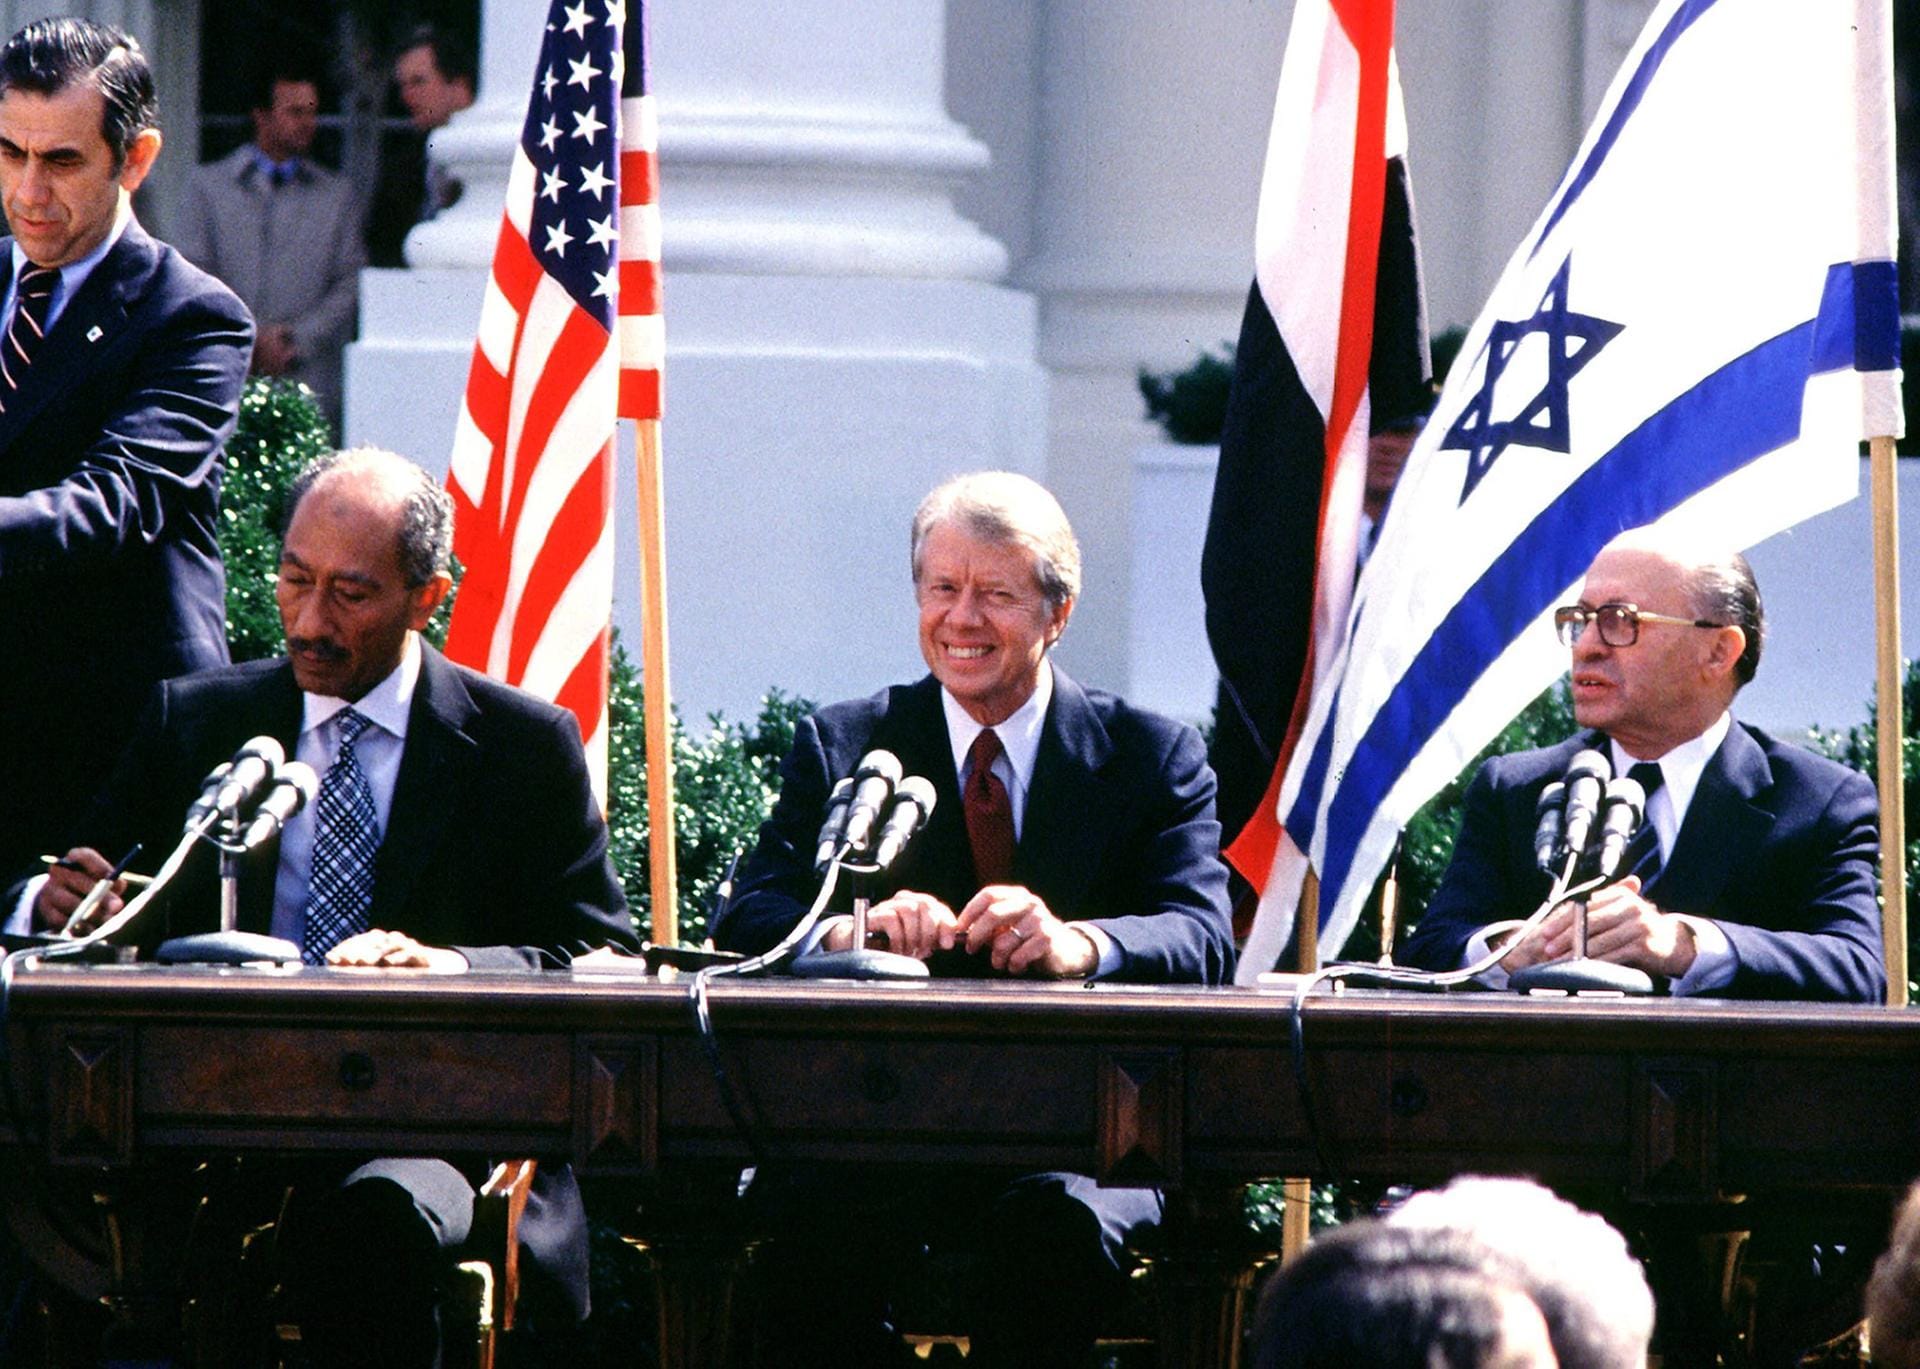 Eine historische Begegnung fand 1978 statt. Unter der Schirmherrschaft von US-Präsident Jimmy Carter schlossen Ägyptens Diktator Nasser und der israelische Regierungschef Menachim Begin im amerikanischen Camp David ein Abkommen zur Normalisierung der gegenseitigen Beziehungen. Ein Jahr später schlossen beide Seiten dann ein Friedensabkommen.